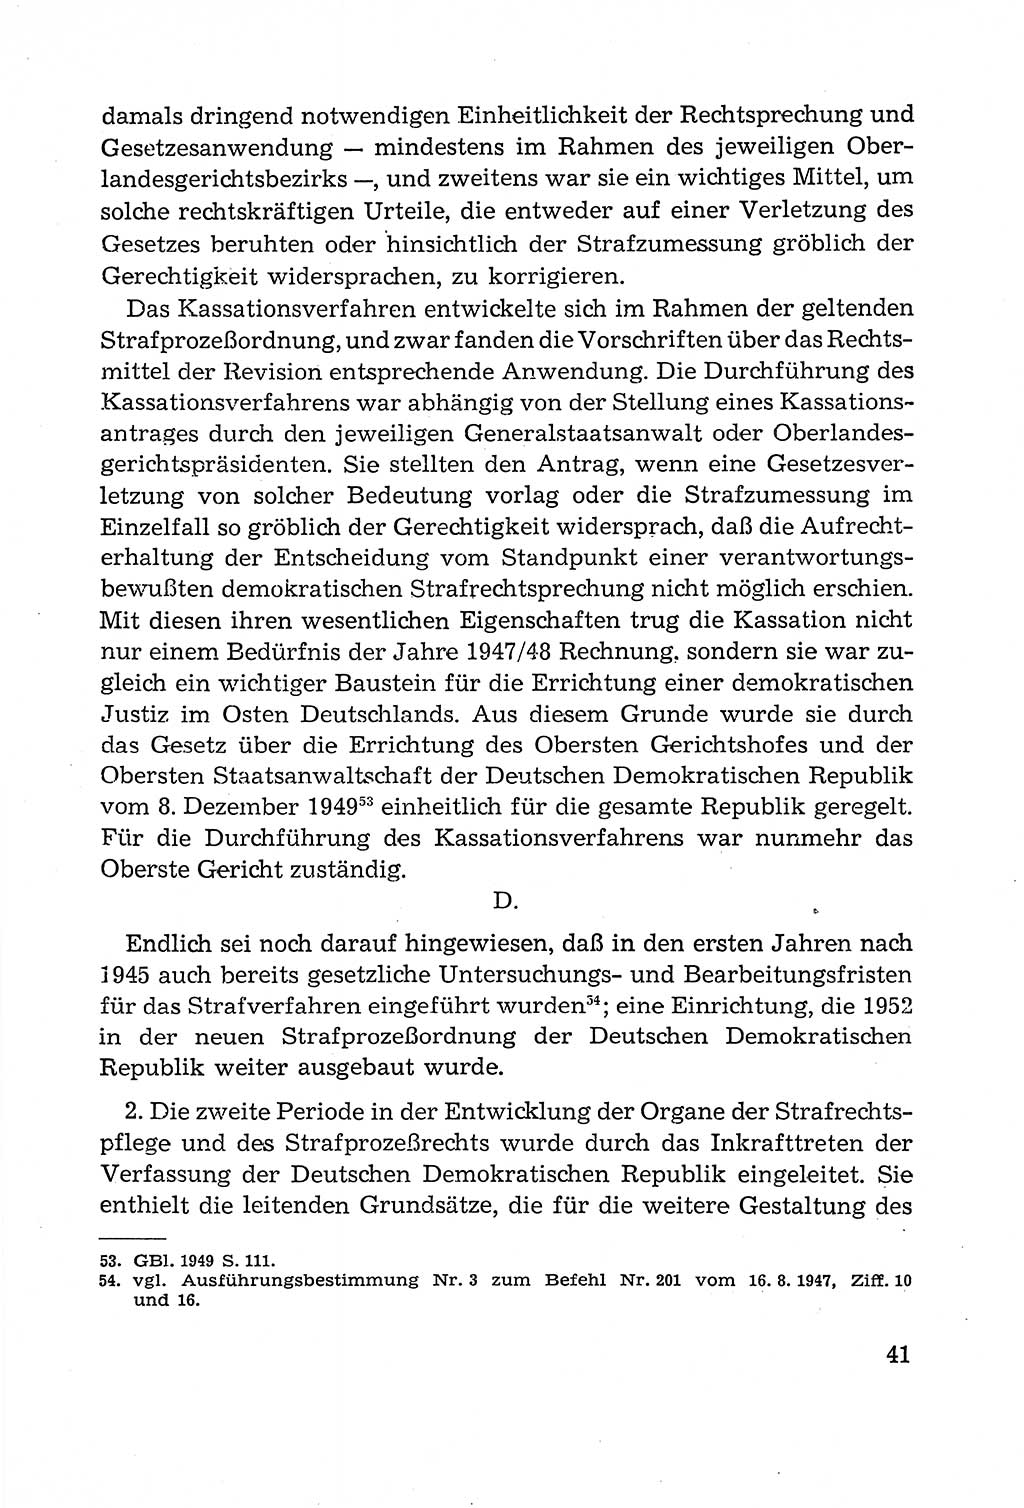 Leitfaden des Strafprozeßrechts der Deutschen Demokratischen Republik (DDR) 1959, Seite 41 (LF StPR DDR 1959, S. 41)